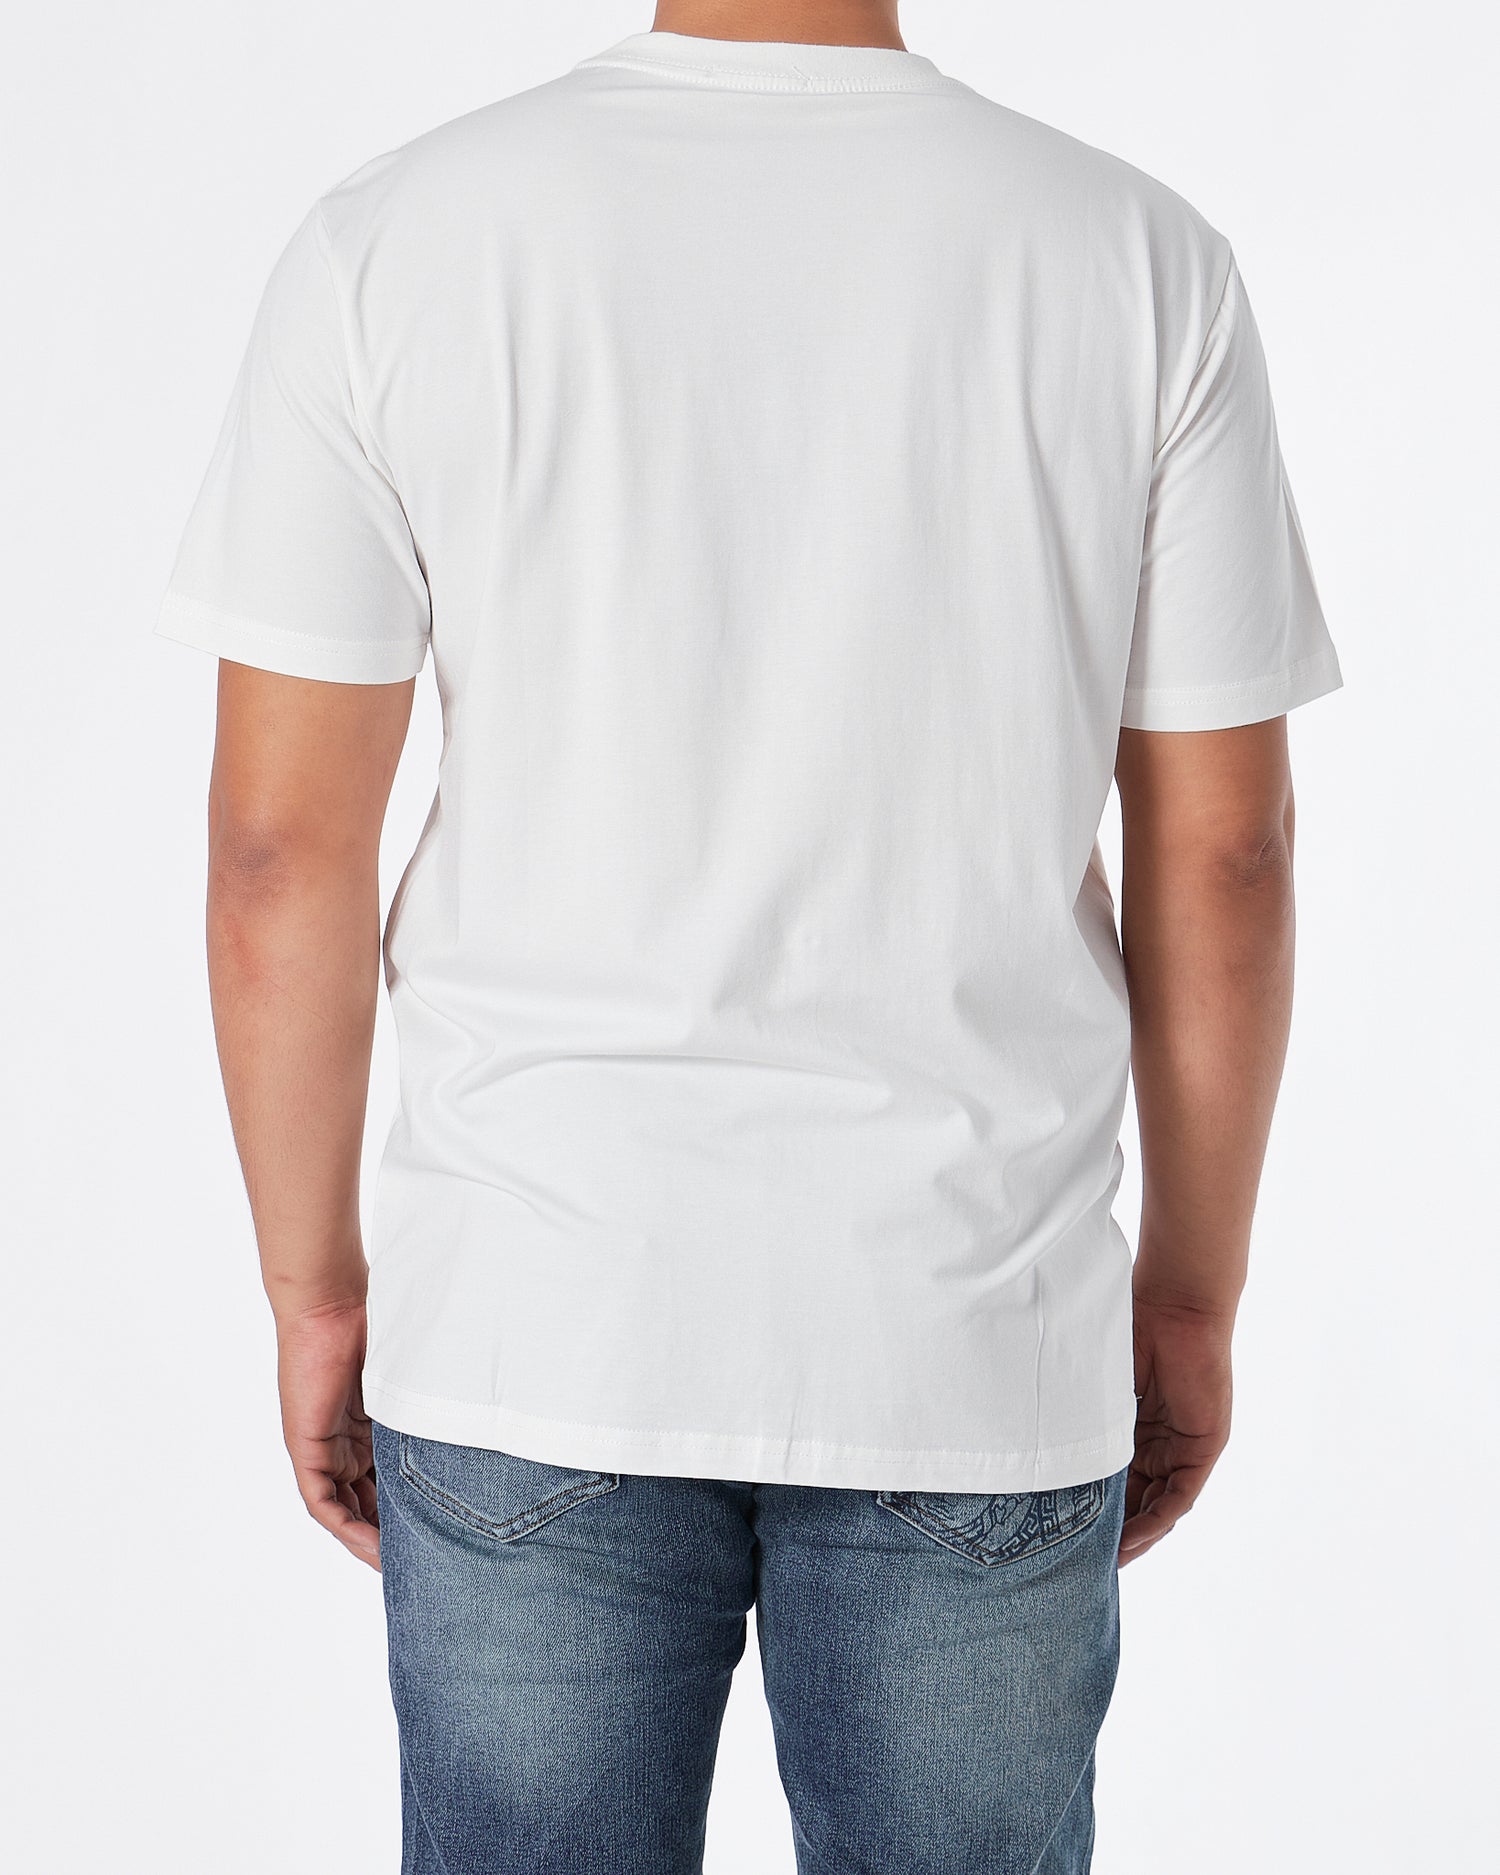 VER Medusa Embroidered Men White T-Shirt 23.90